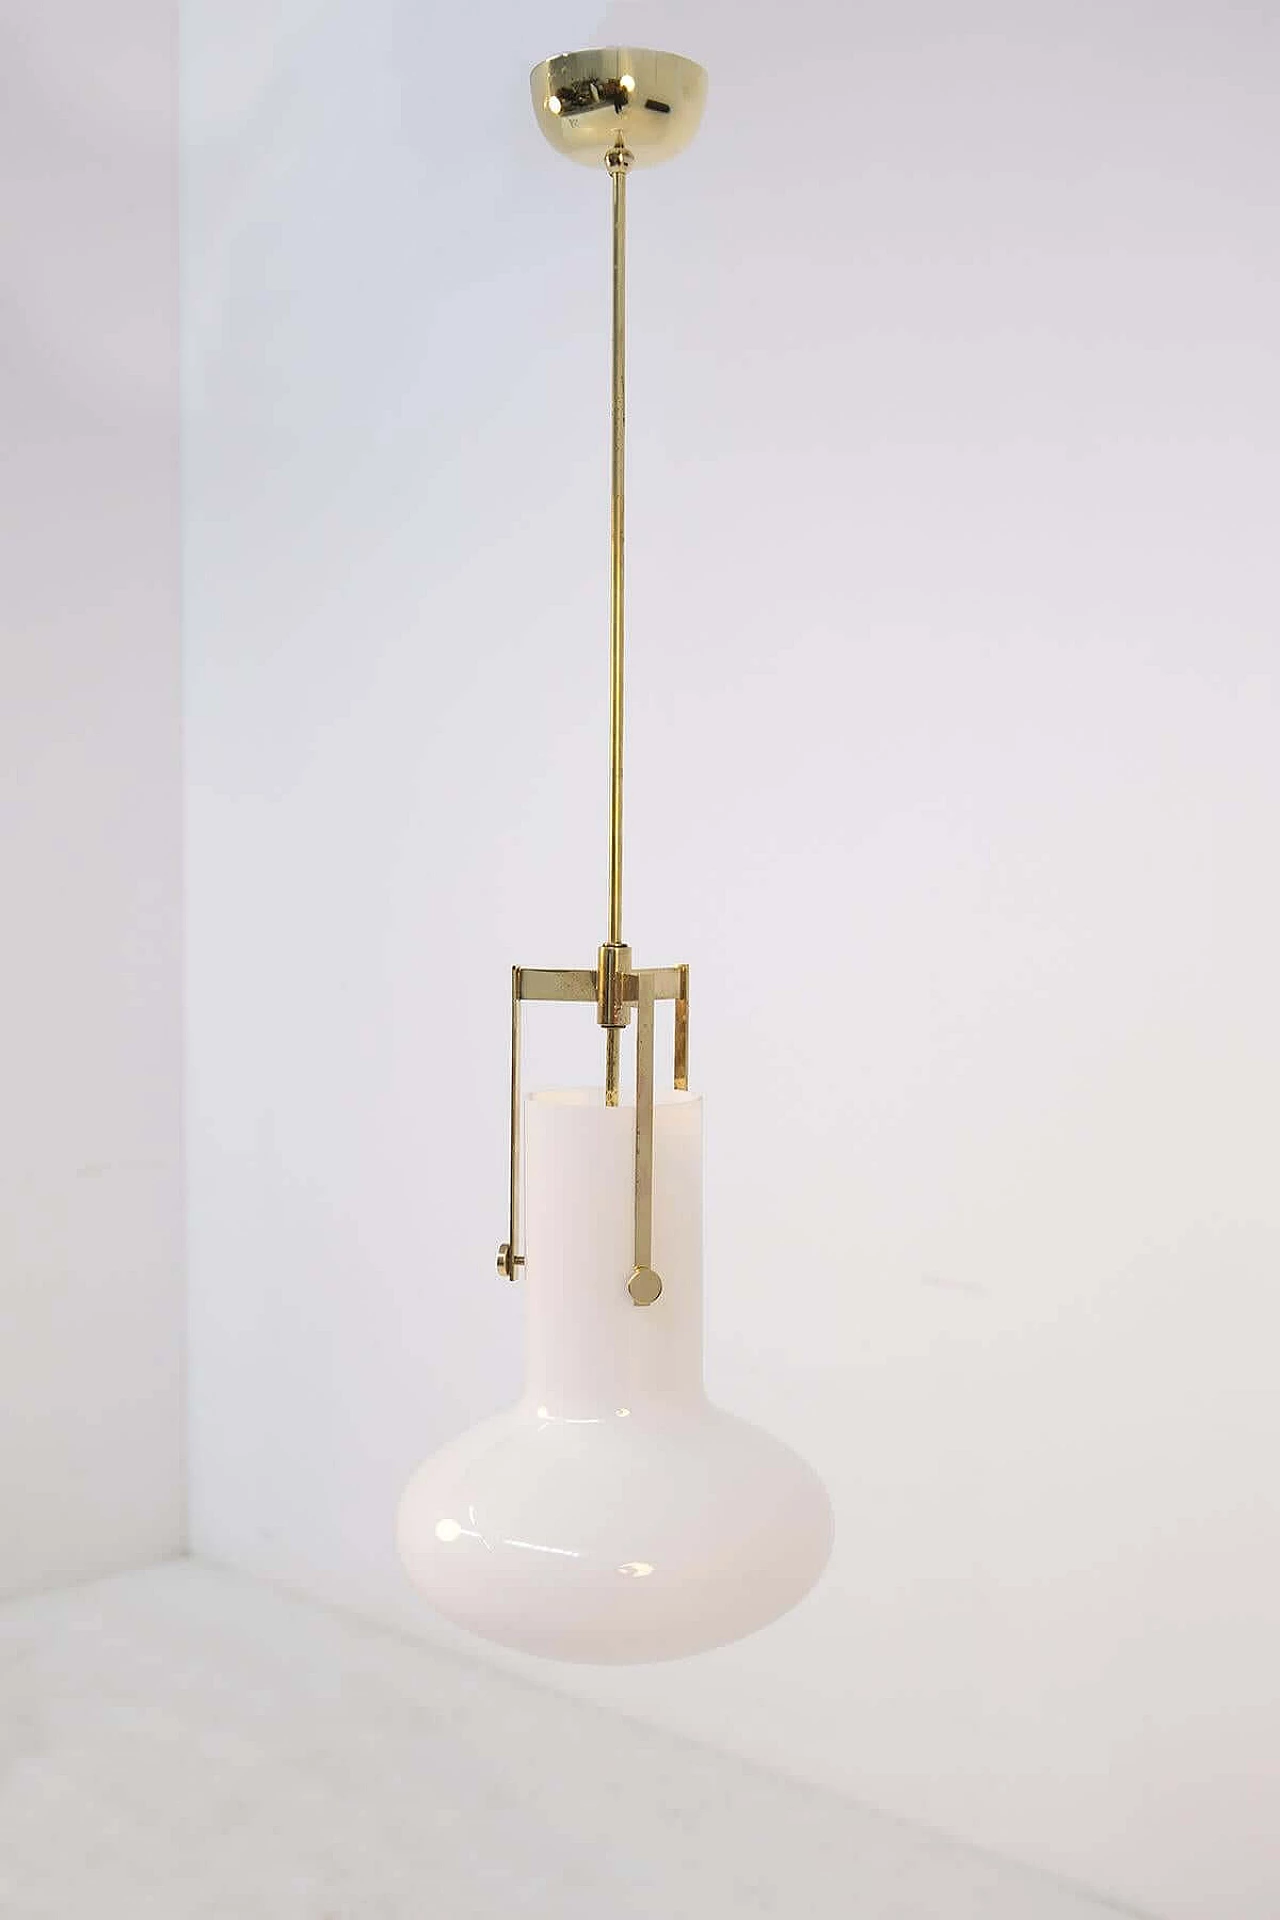 Ignazio Gardella pendant lamp for Azucena in brass and glass, 1960 1382191